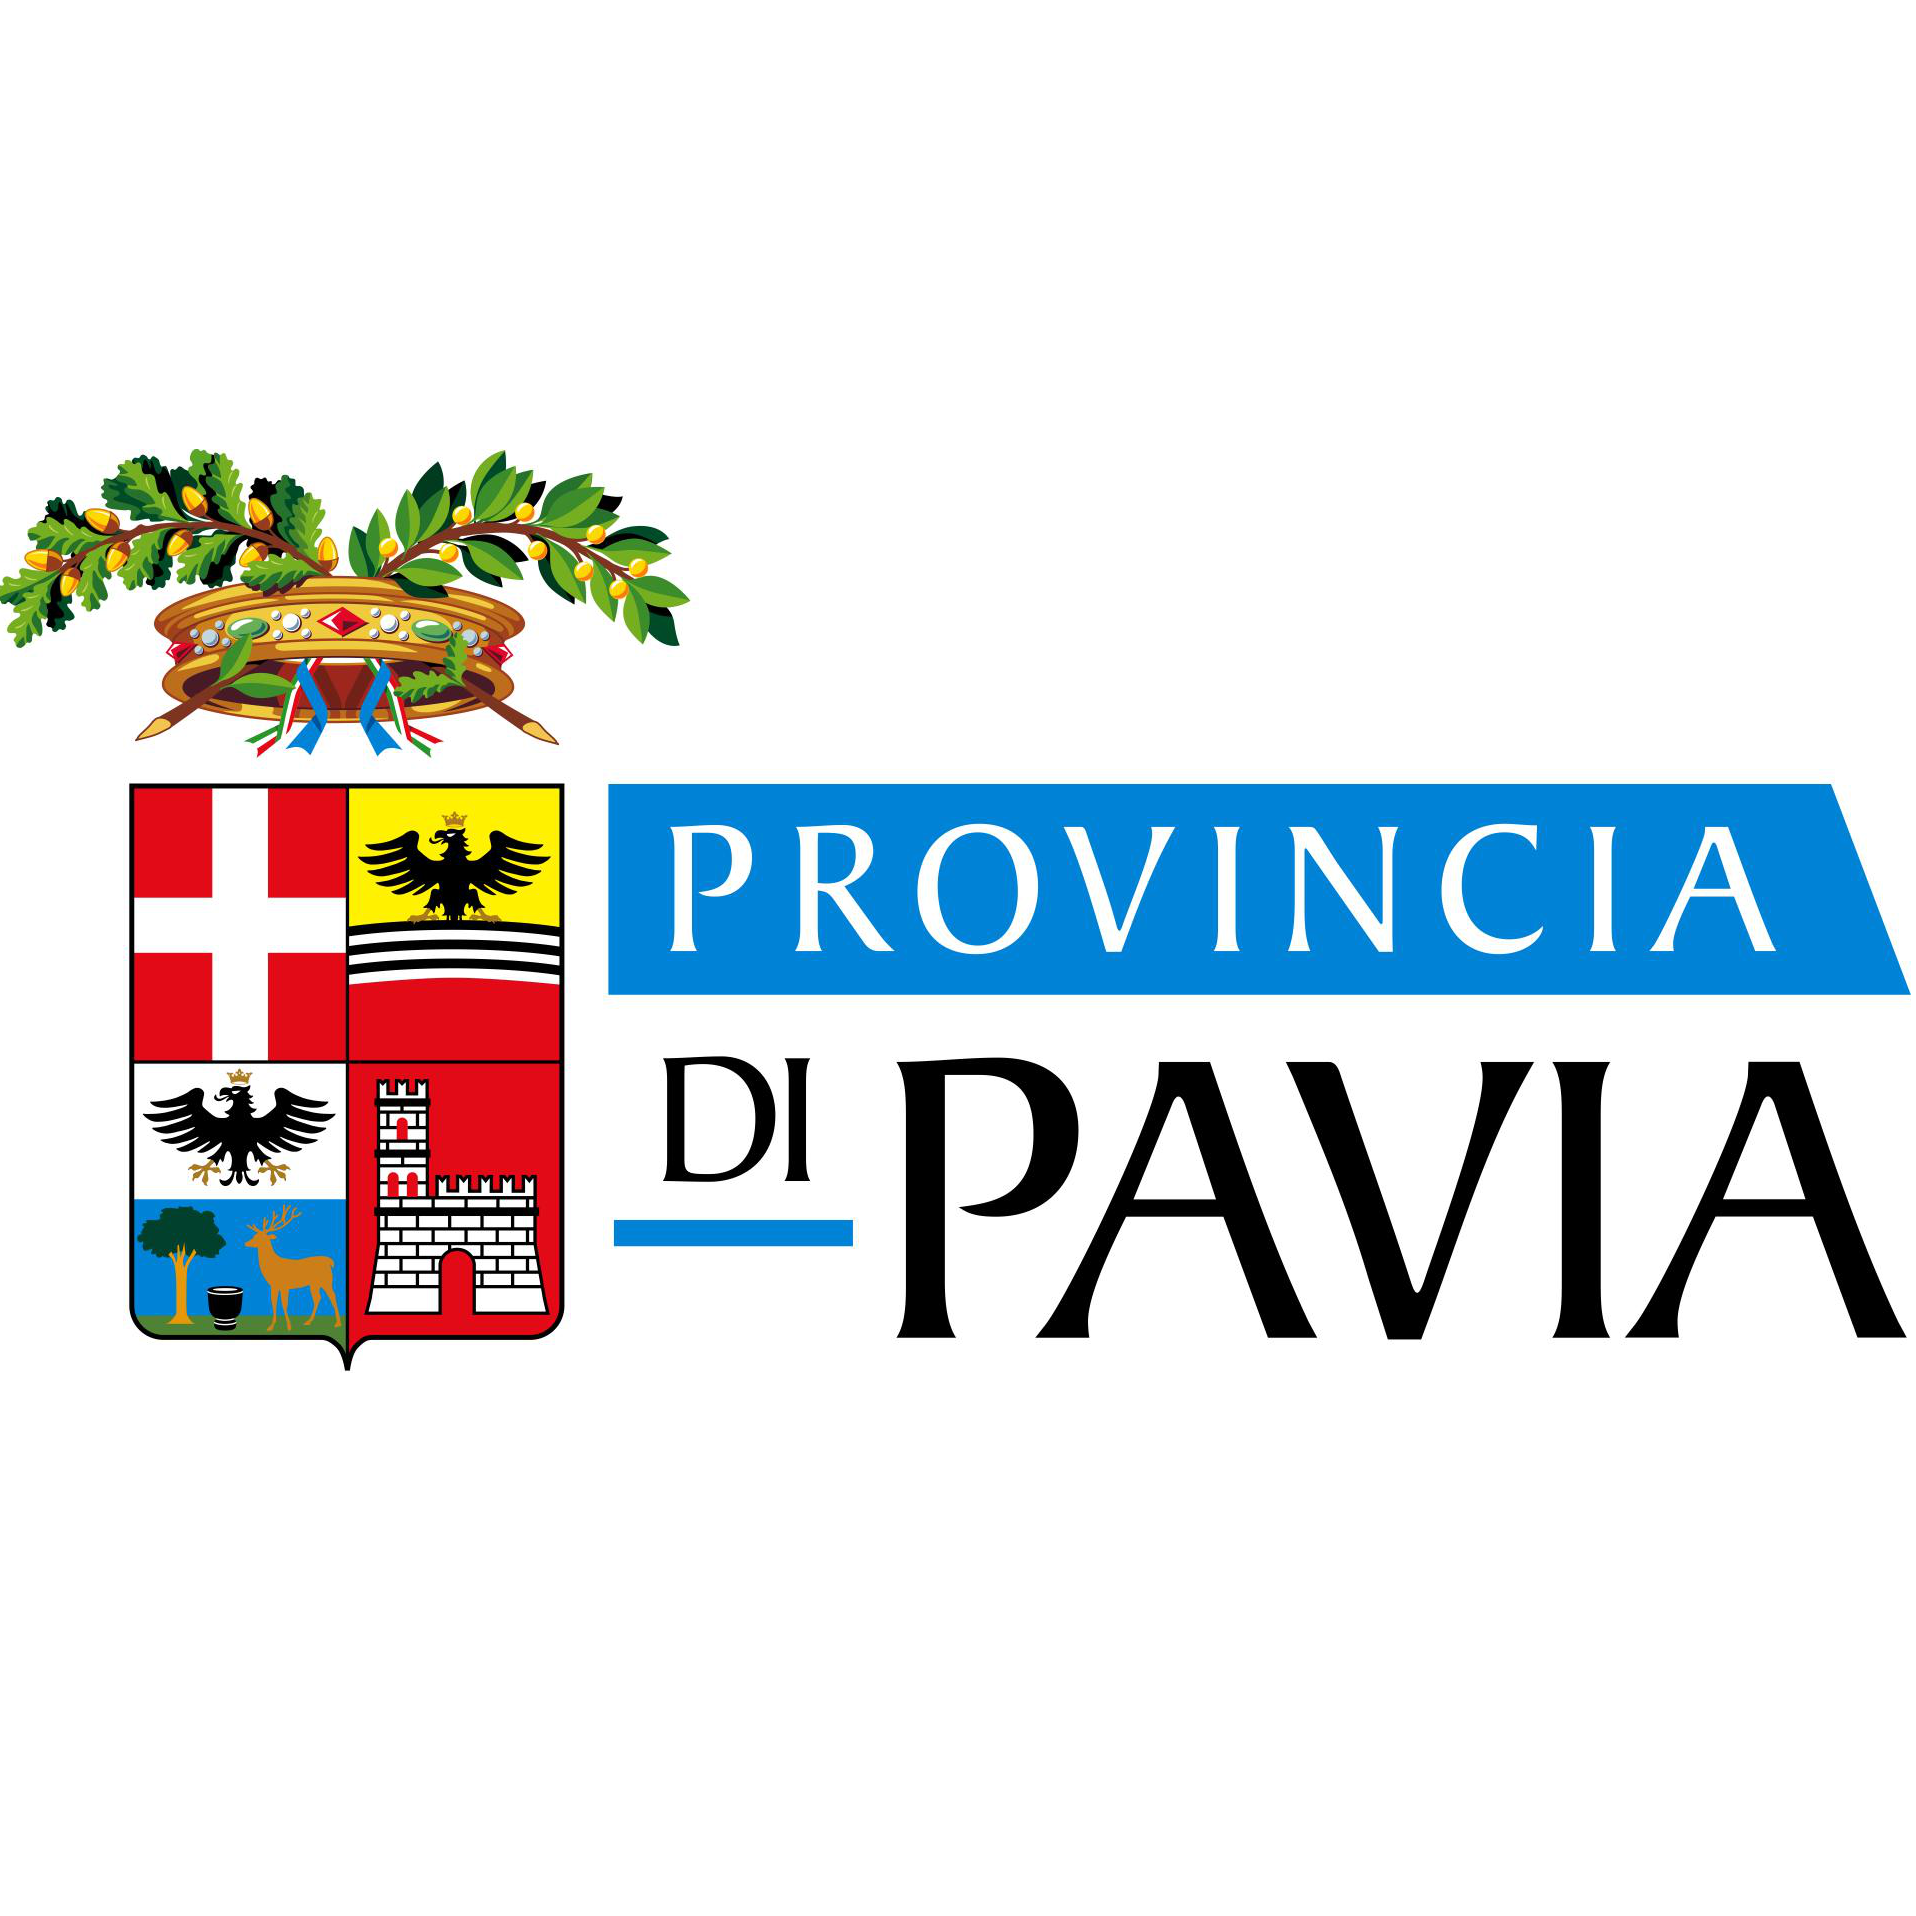 Provincia di Pavia : Brand Short Description Type Here.